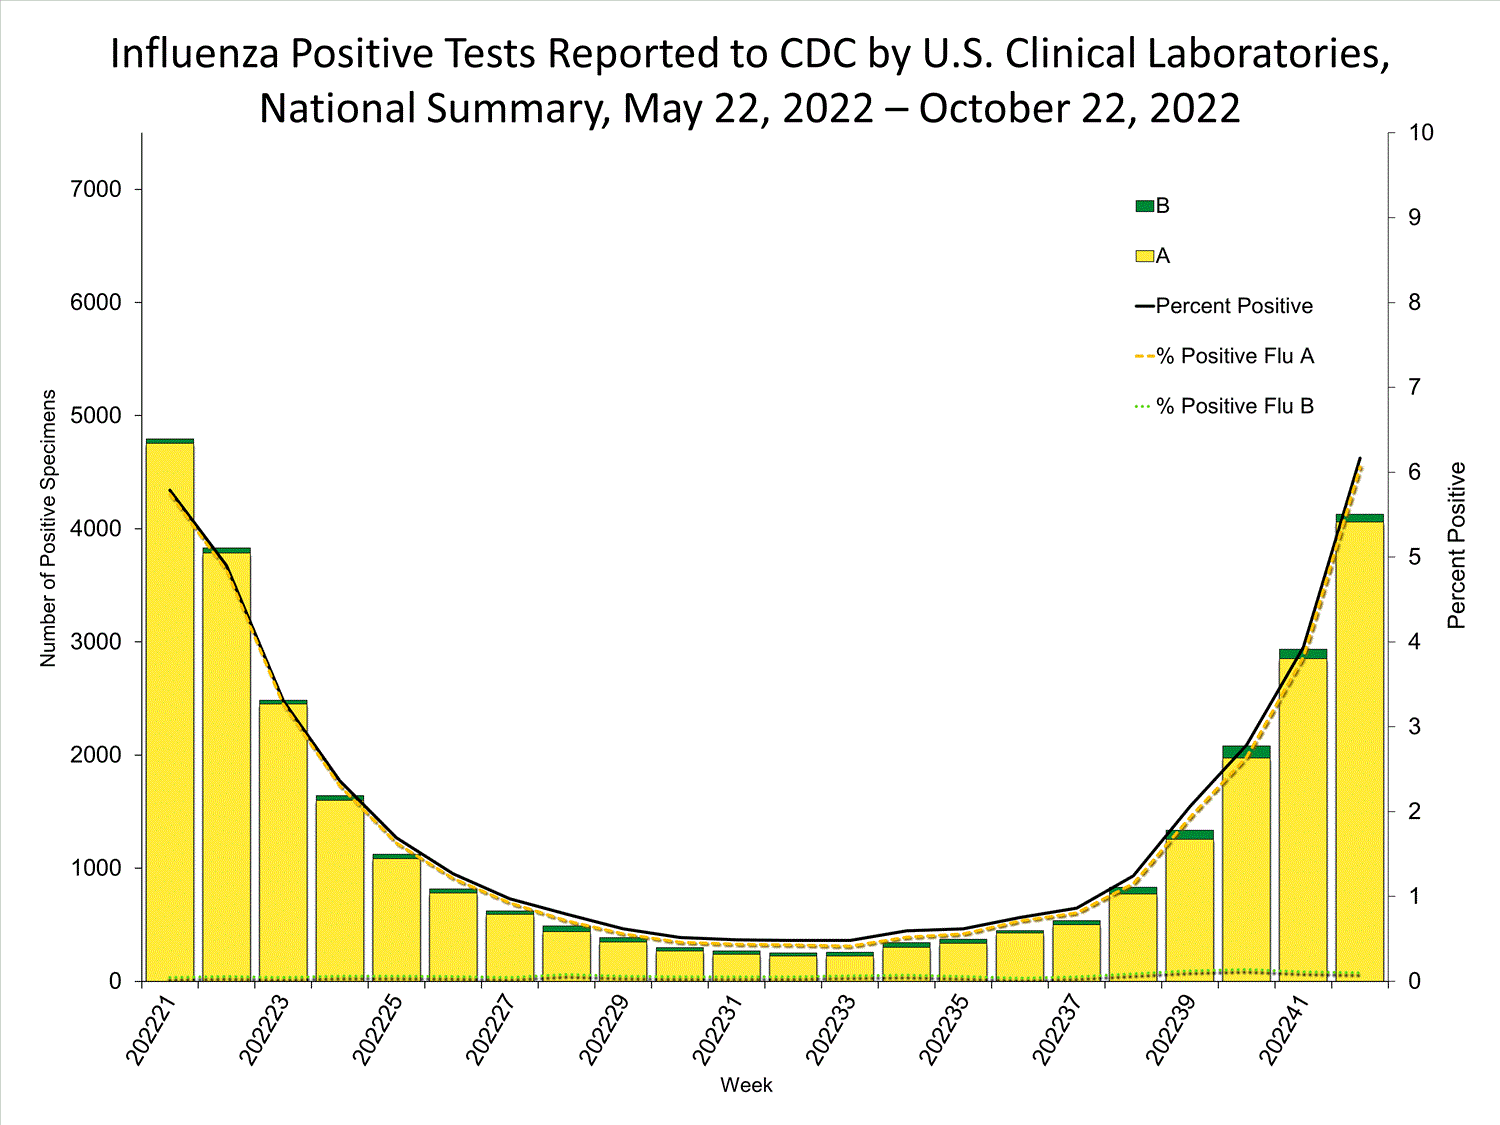 Tests positifs pour la grippe signalés aux CDC par les laboratoires cliniques américains, mai - octobre 2022.